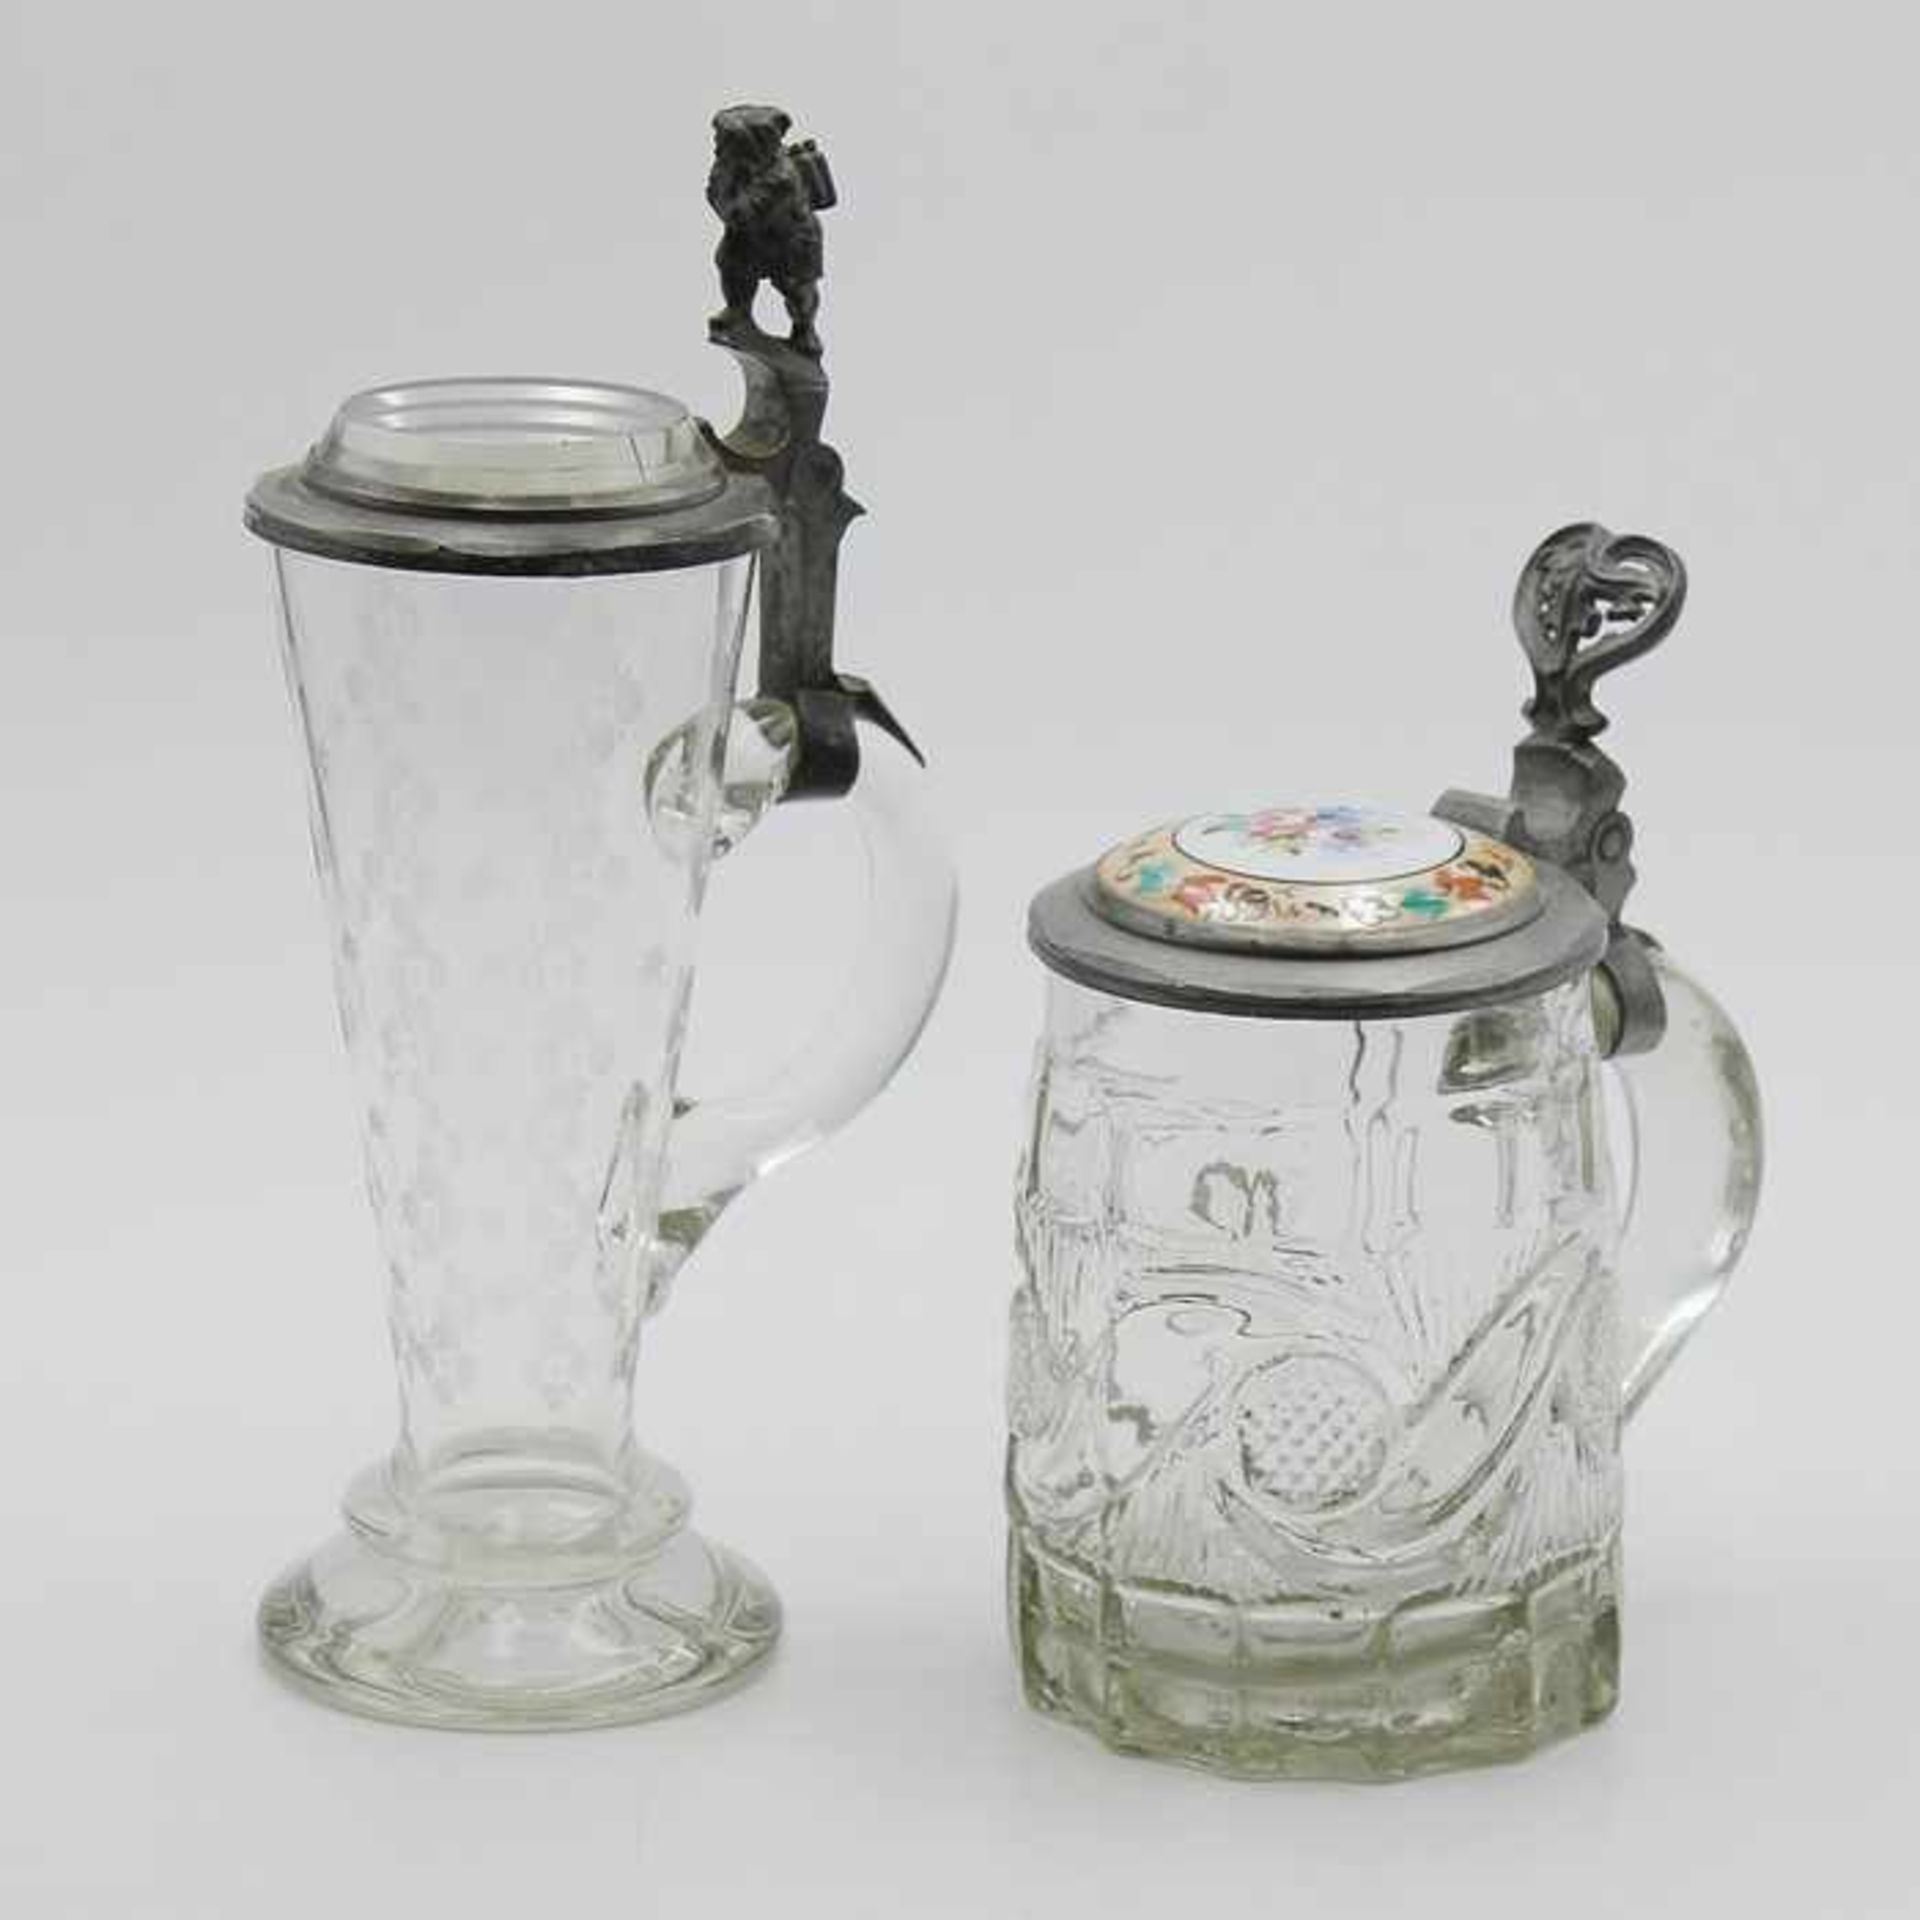 Bierkrüge19.Jh., 2 St., farbloses, z.T. formgepresstes Glas, runder Stand, konischer / - Bild 2 aus 2